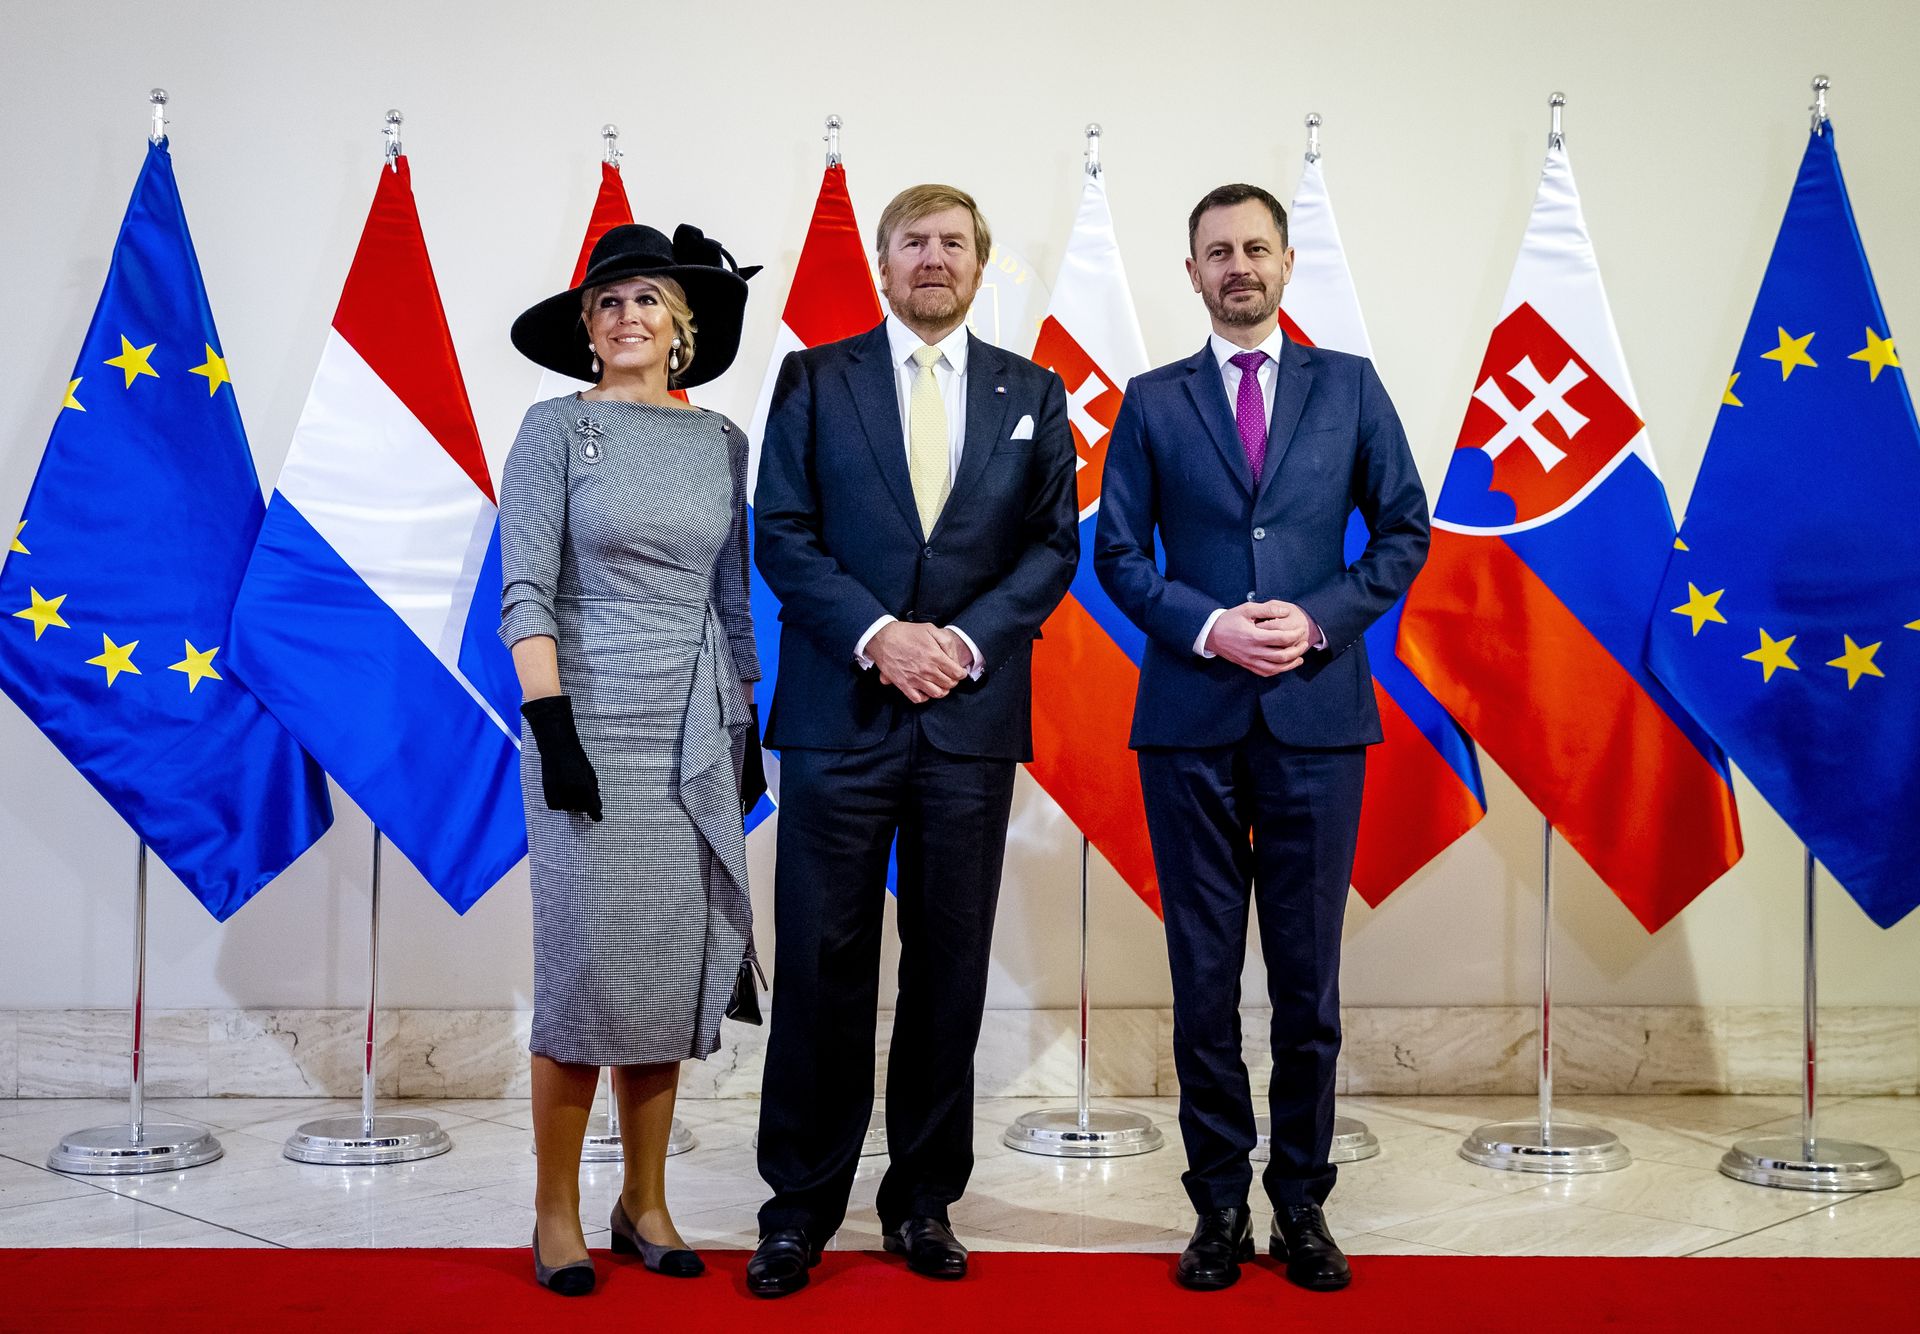 Máxima Willem-Alexander staatsbezoek Slowakije